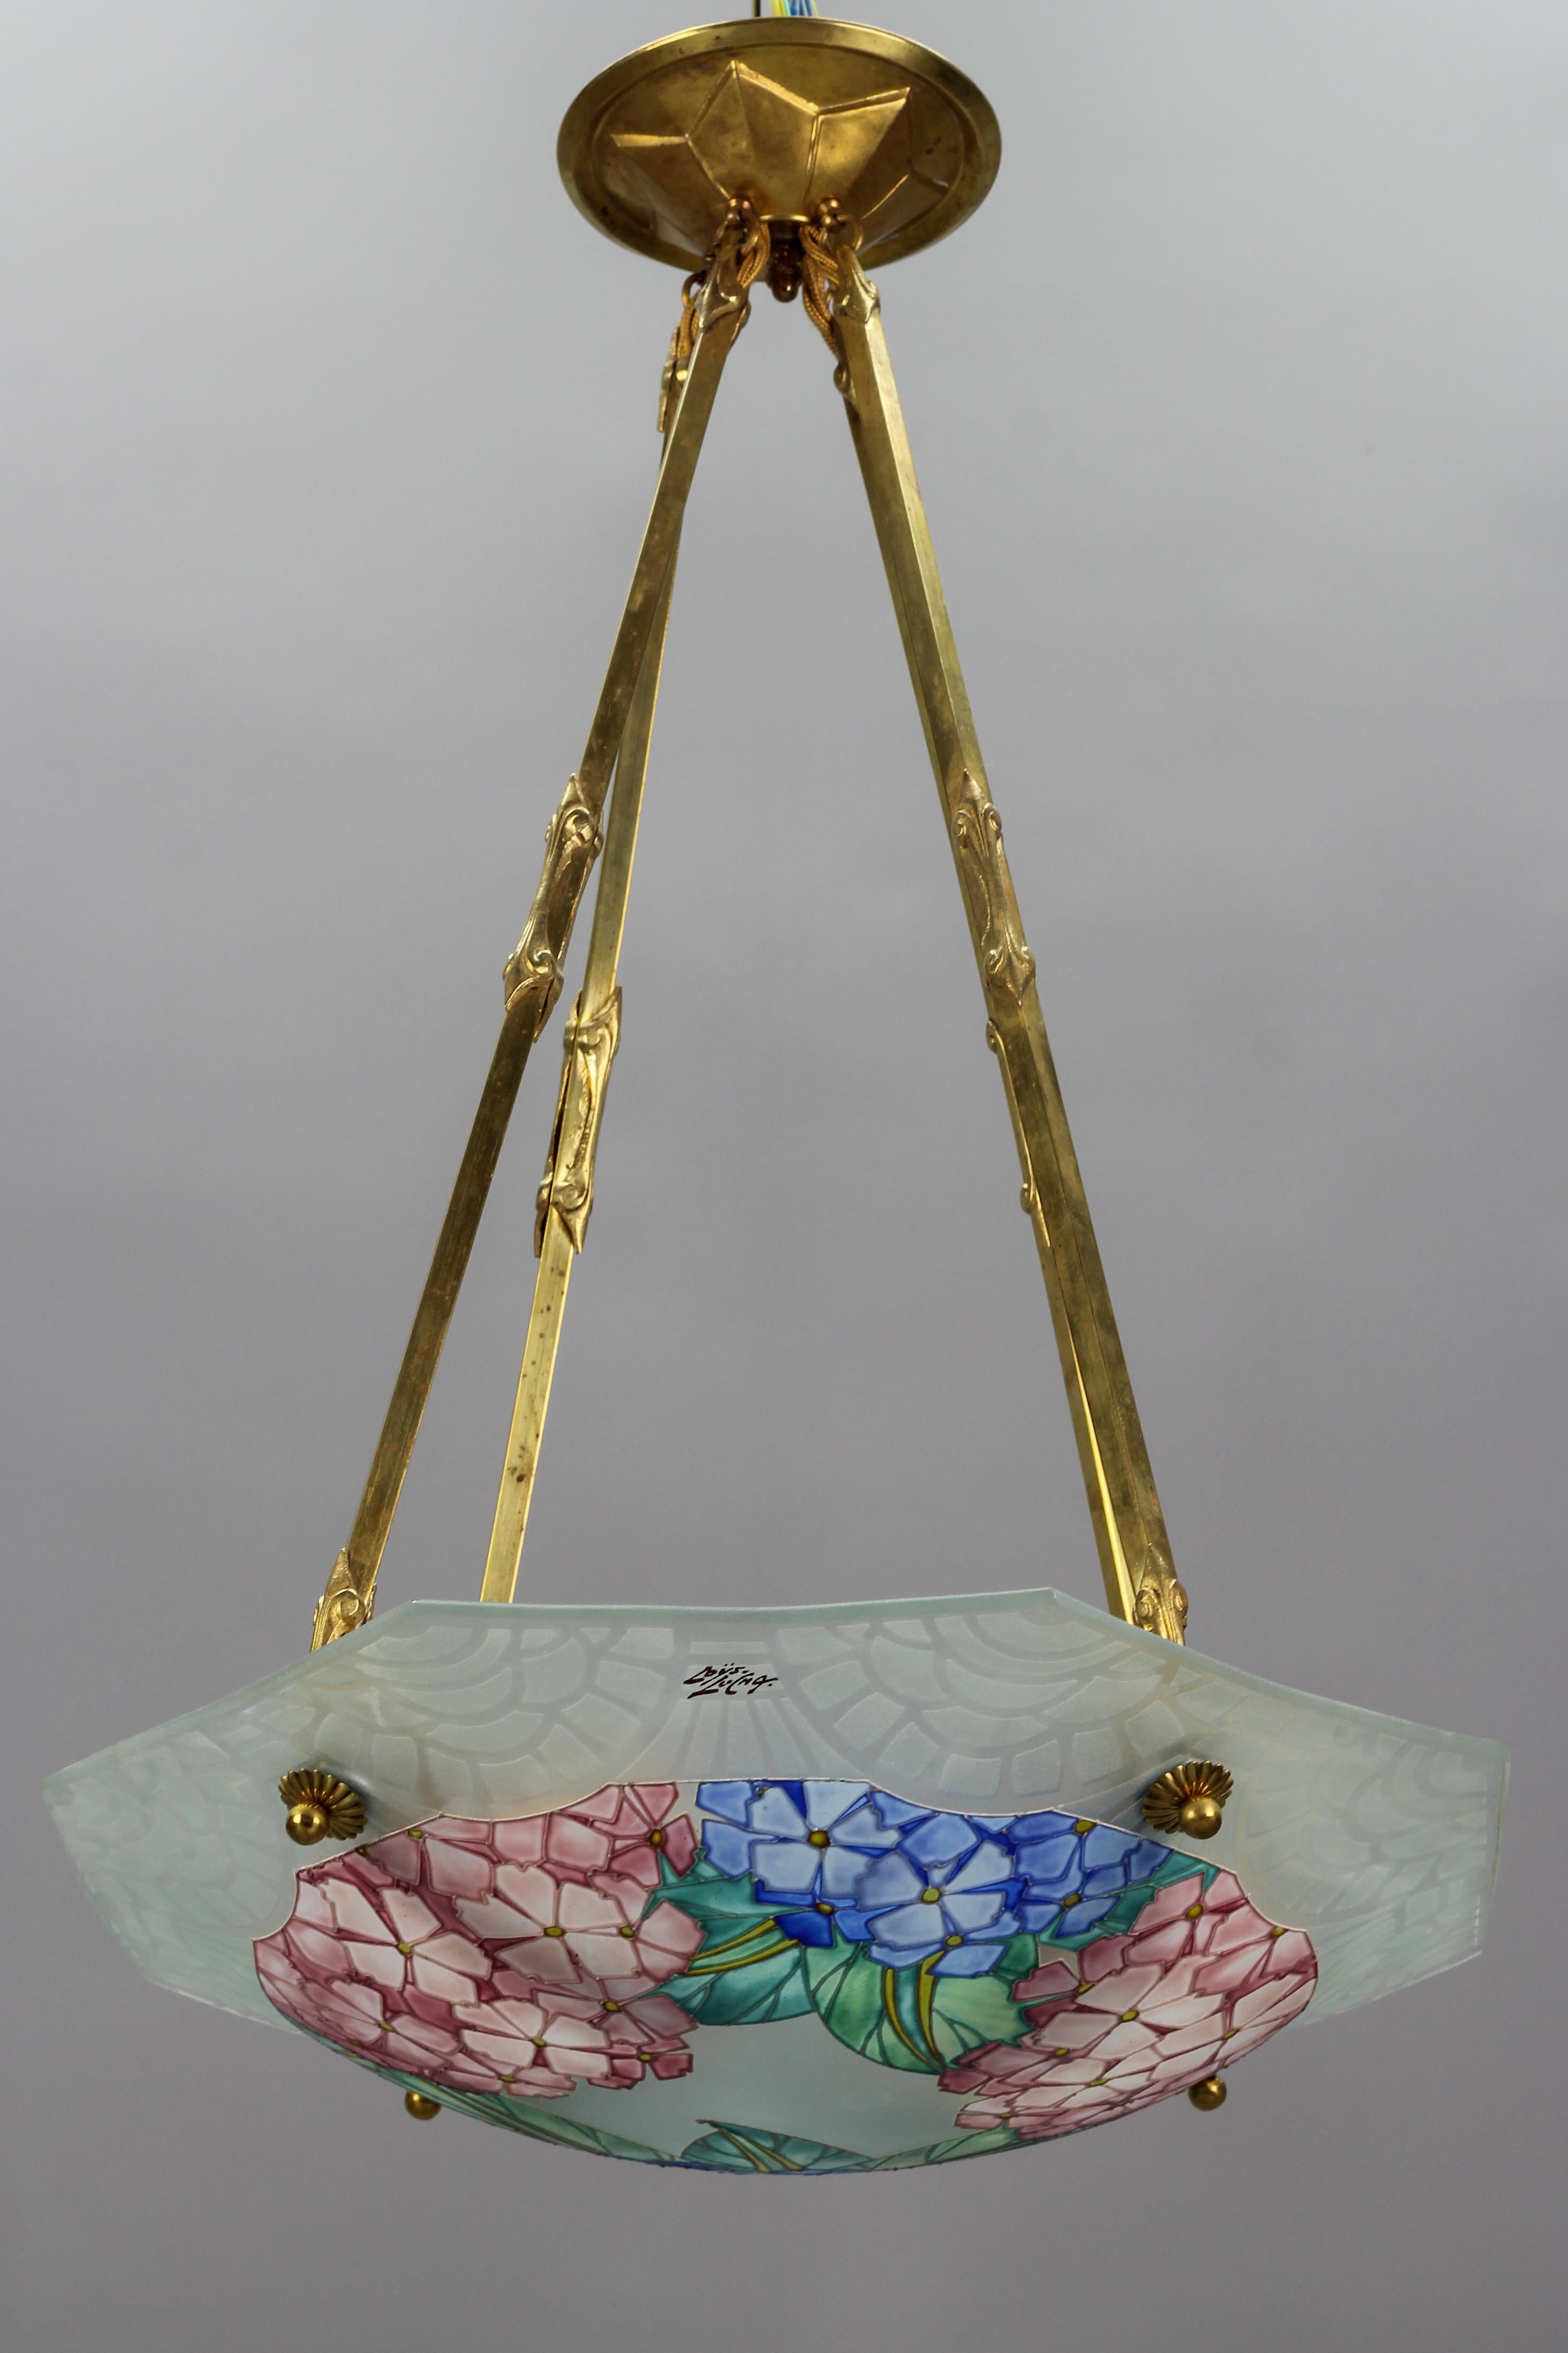 Cette superbe coupe octogonale Art Déco en verre moulé, dépoli et peint à la main présente un motif floral - des hortensias - dans des pastels doux - rose, bleu et vert - qui est magnifique aussi bien éclairé qu'éteint. Le bord extérieur est décoré